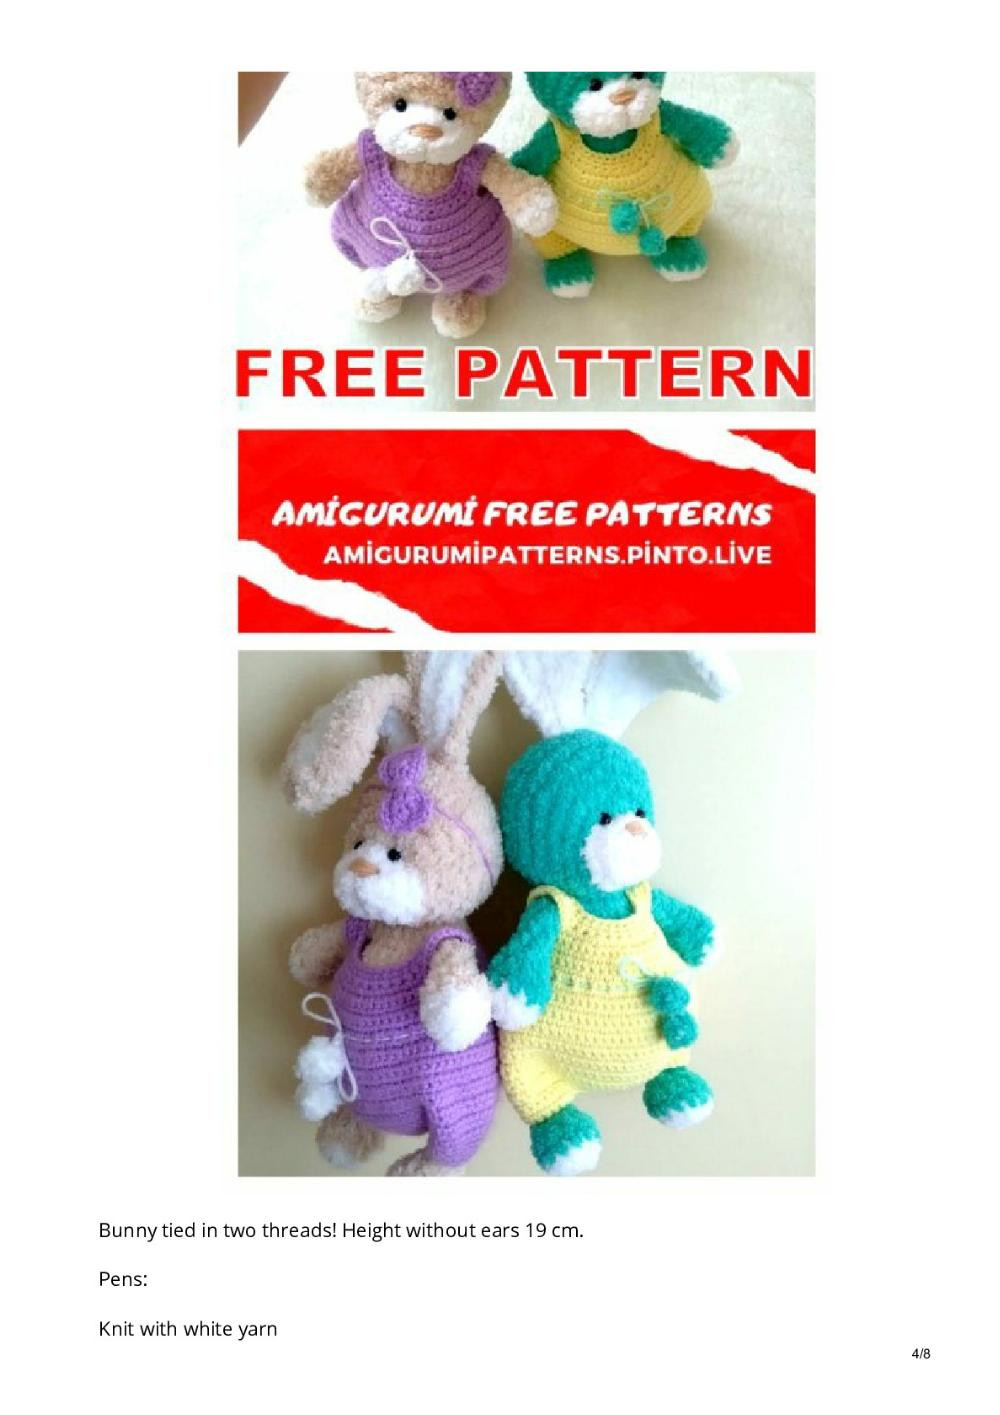 Amigurumi Little Cute Bunny Free Crochet Pattern